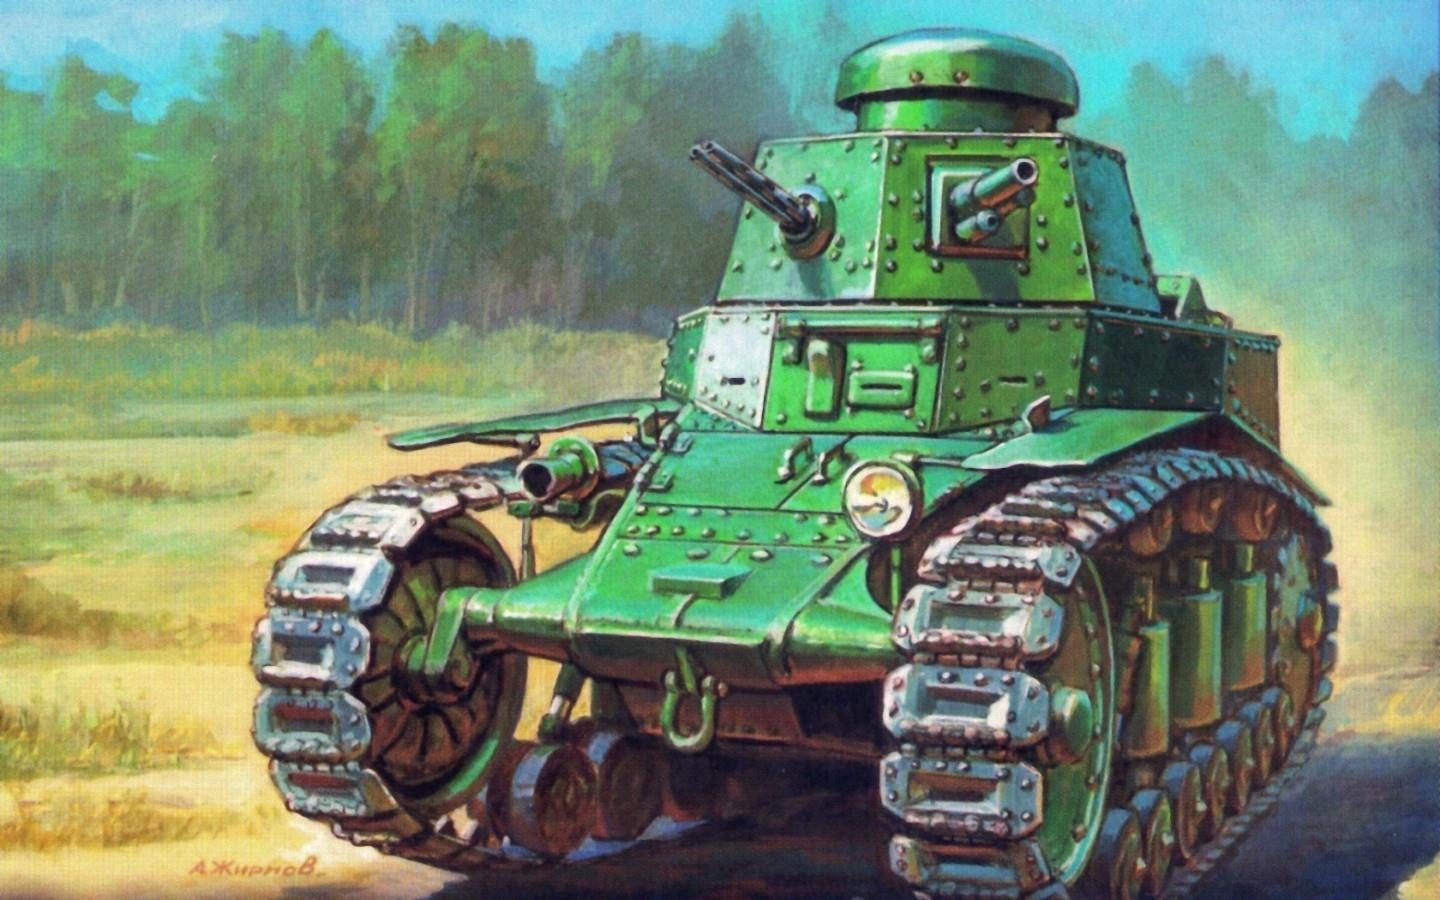 1927-1932. Т-18_МС-1 - легкий танк сопровождения пехоты